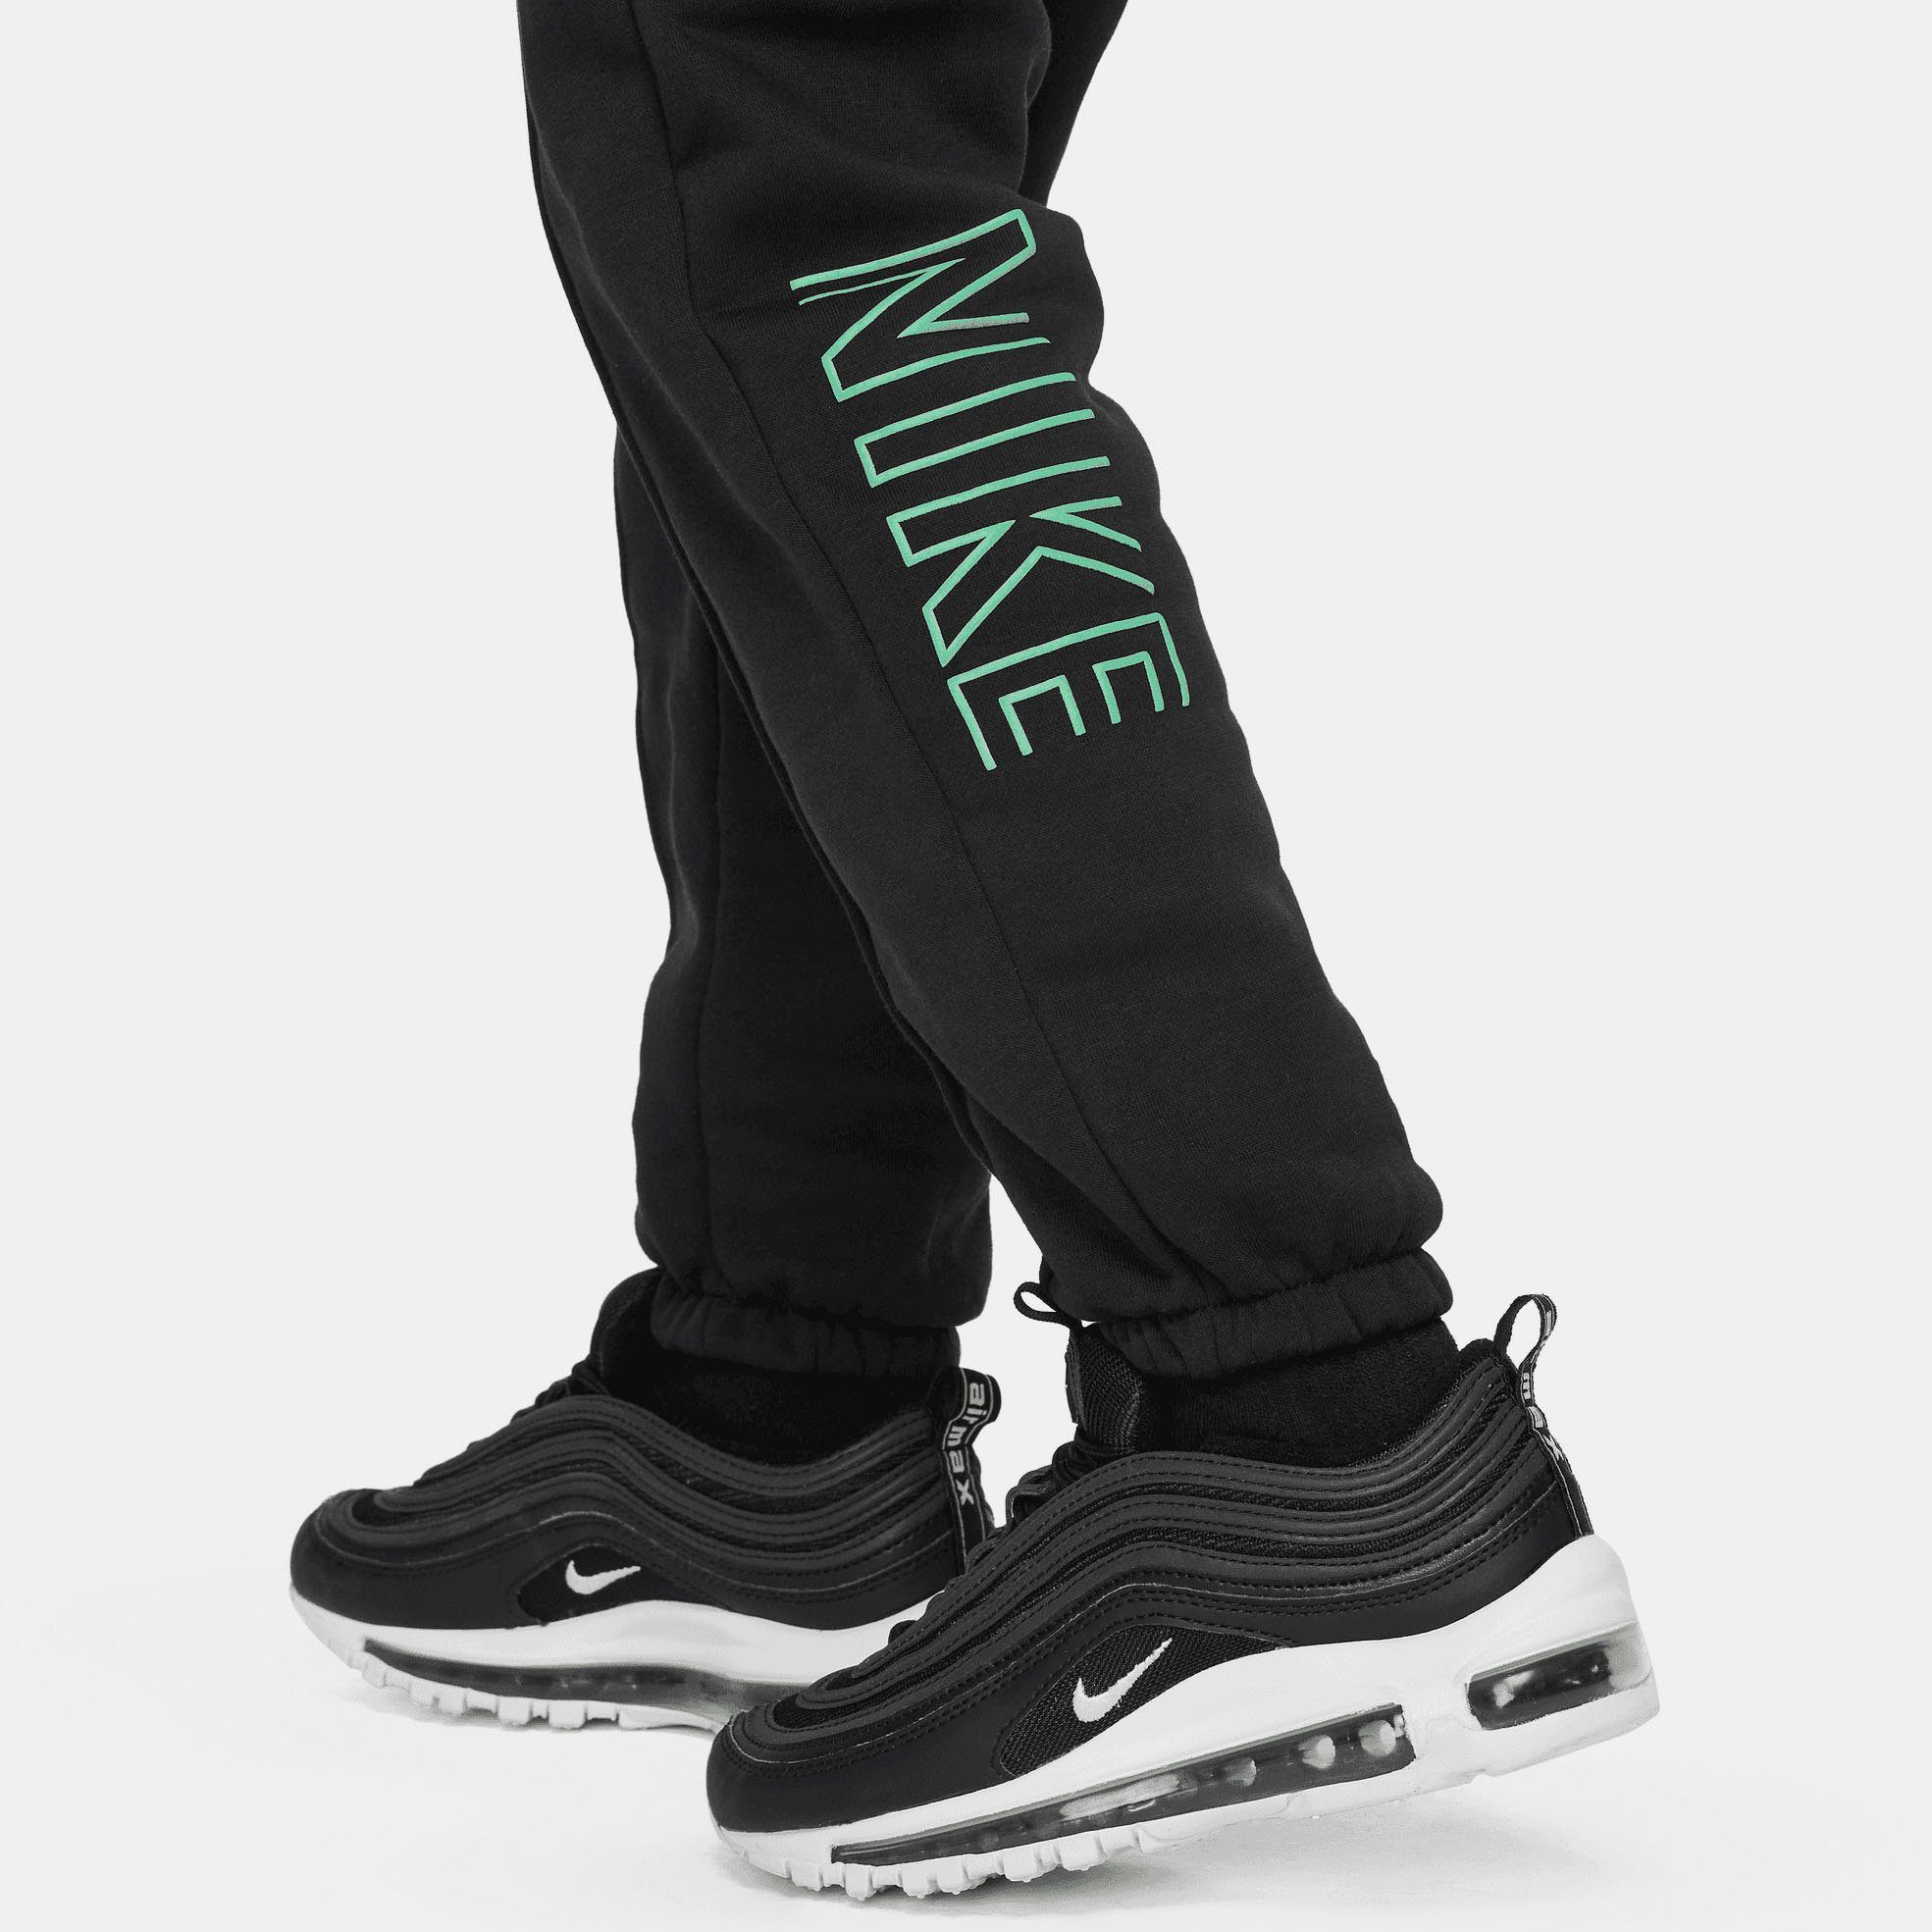 CF Sportswear - Jogginghose PANT SW schwarz Nike für NSW FLC Kinder